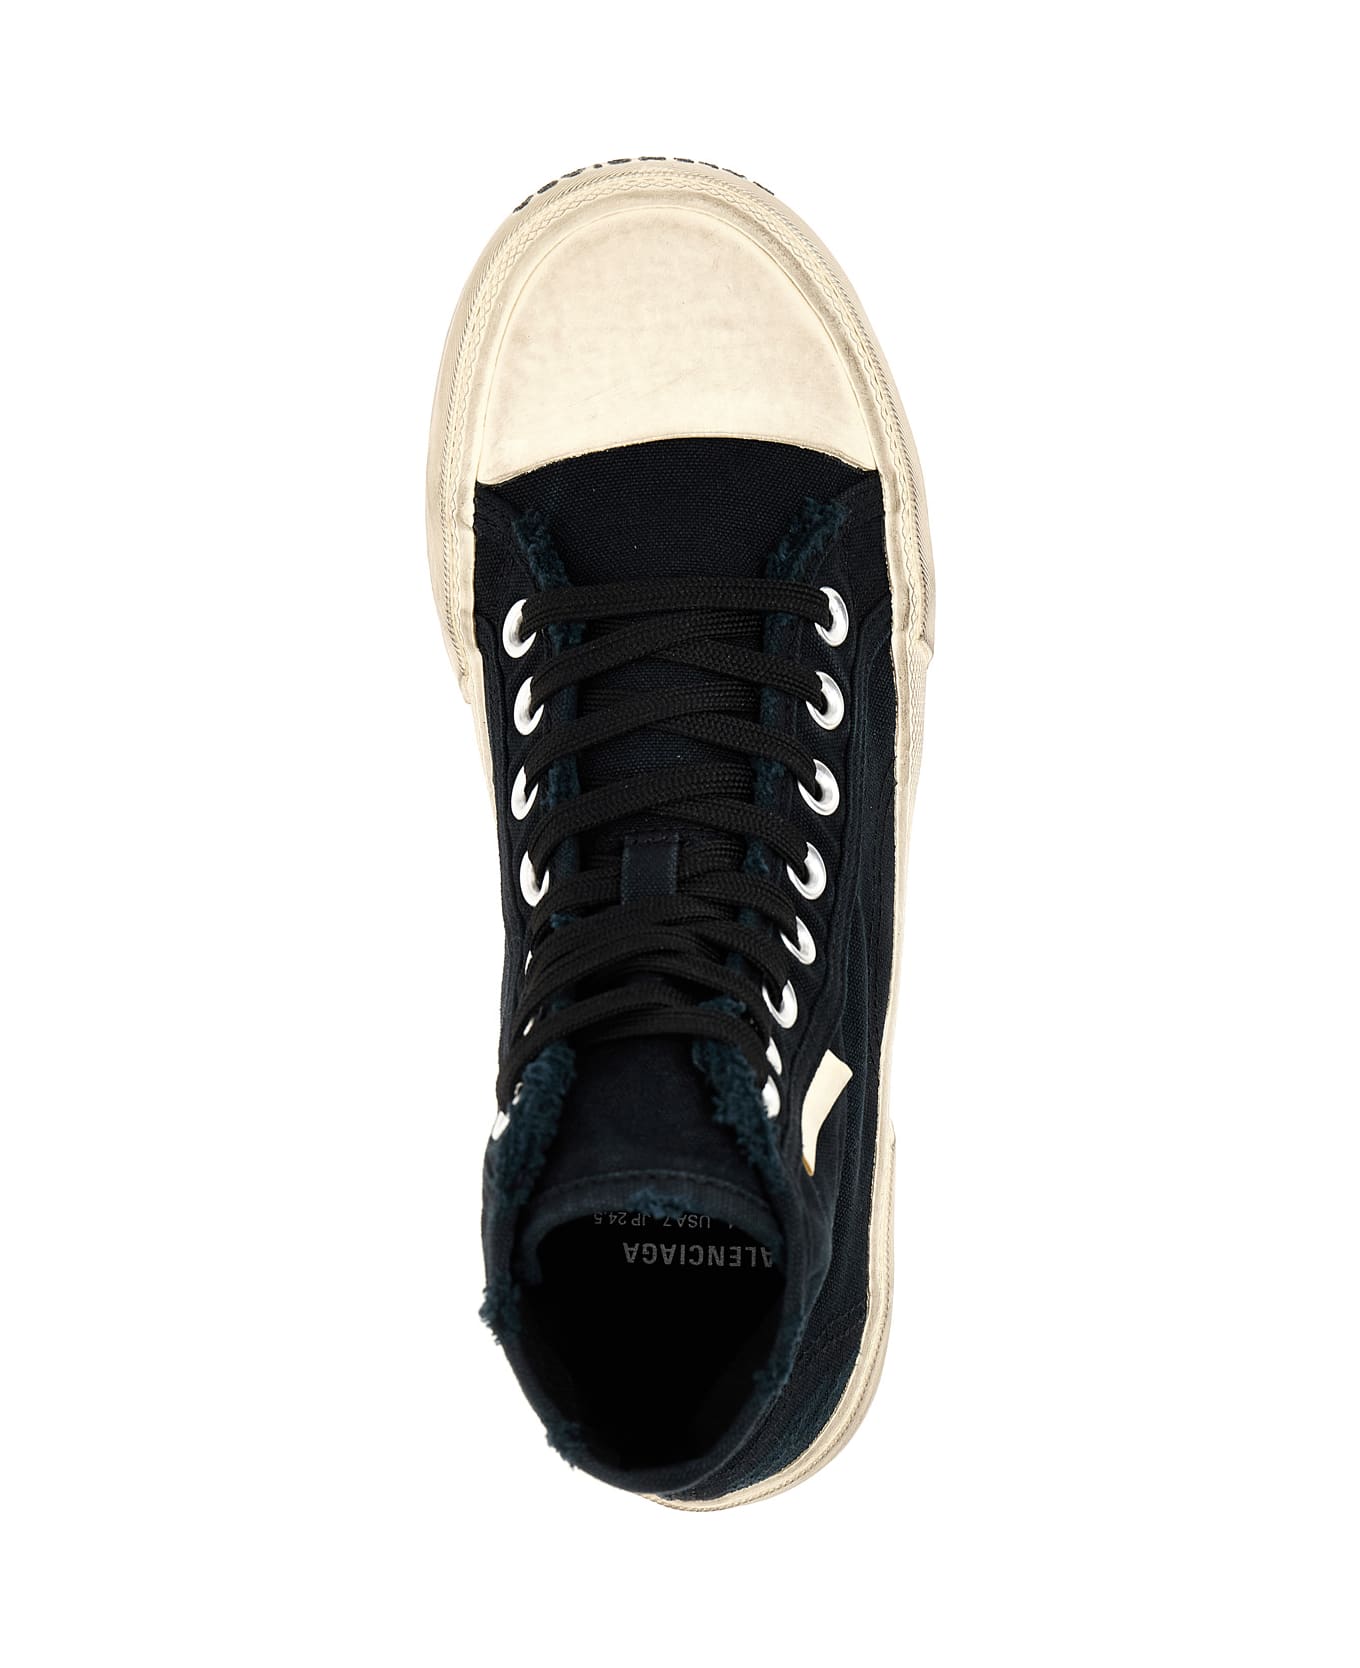 Balenciaga Paris High Top Sneakers - White/Black スニーカー